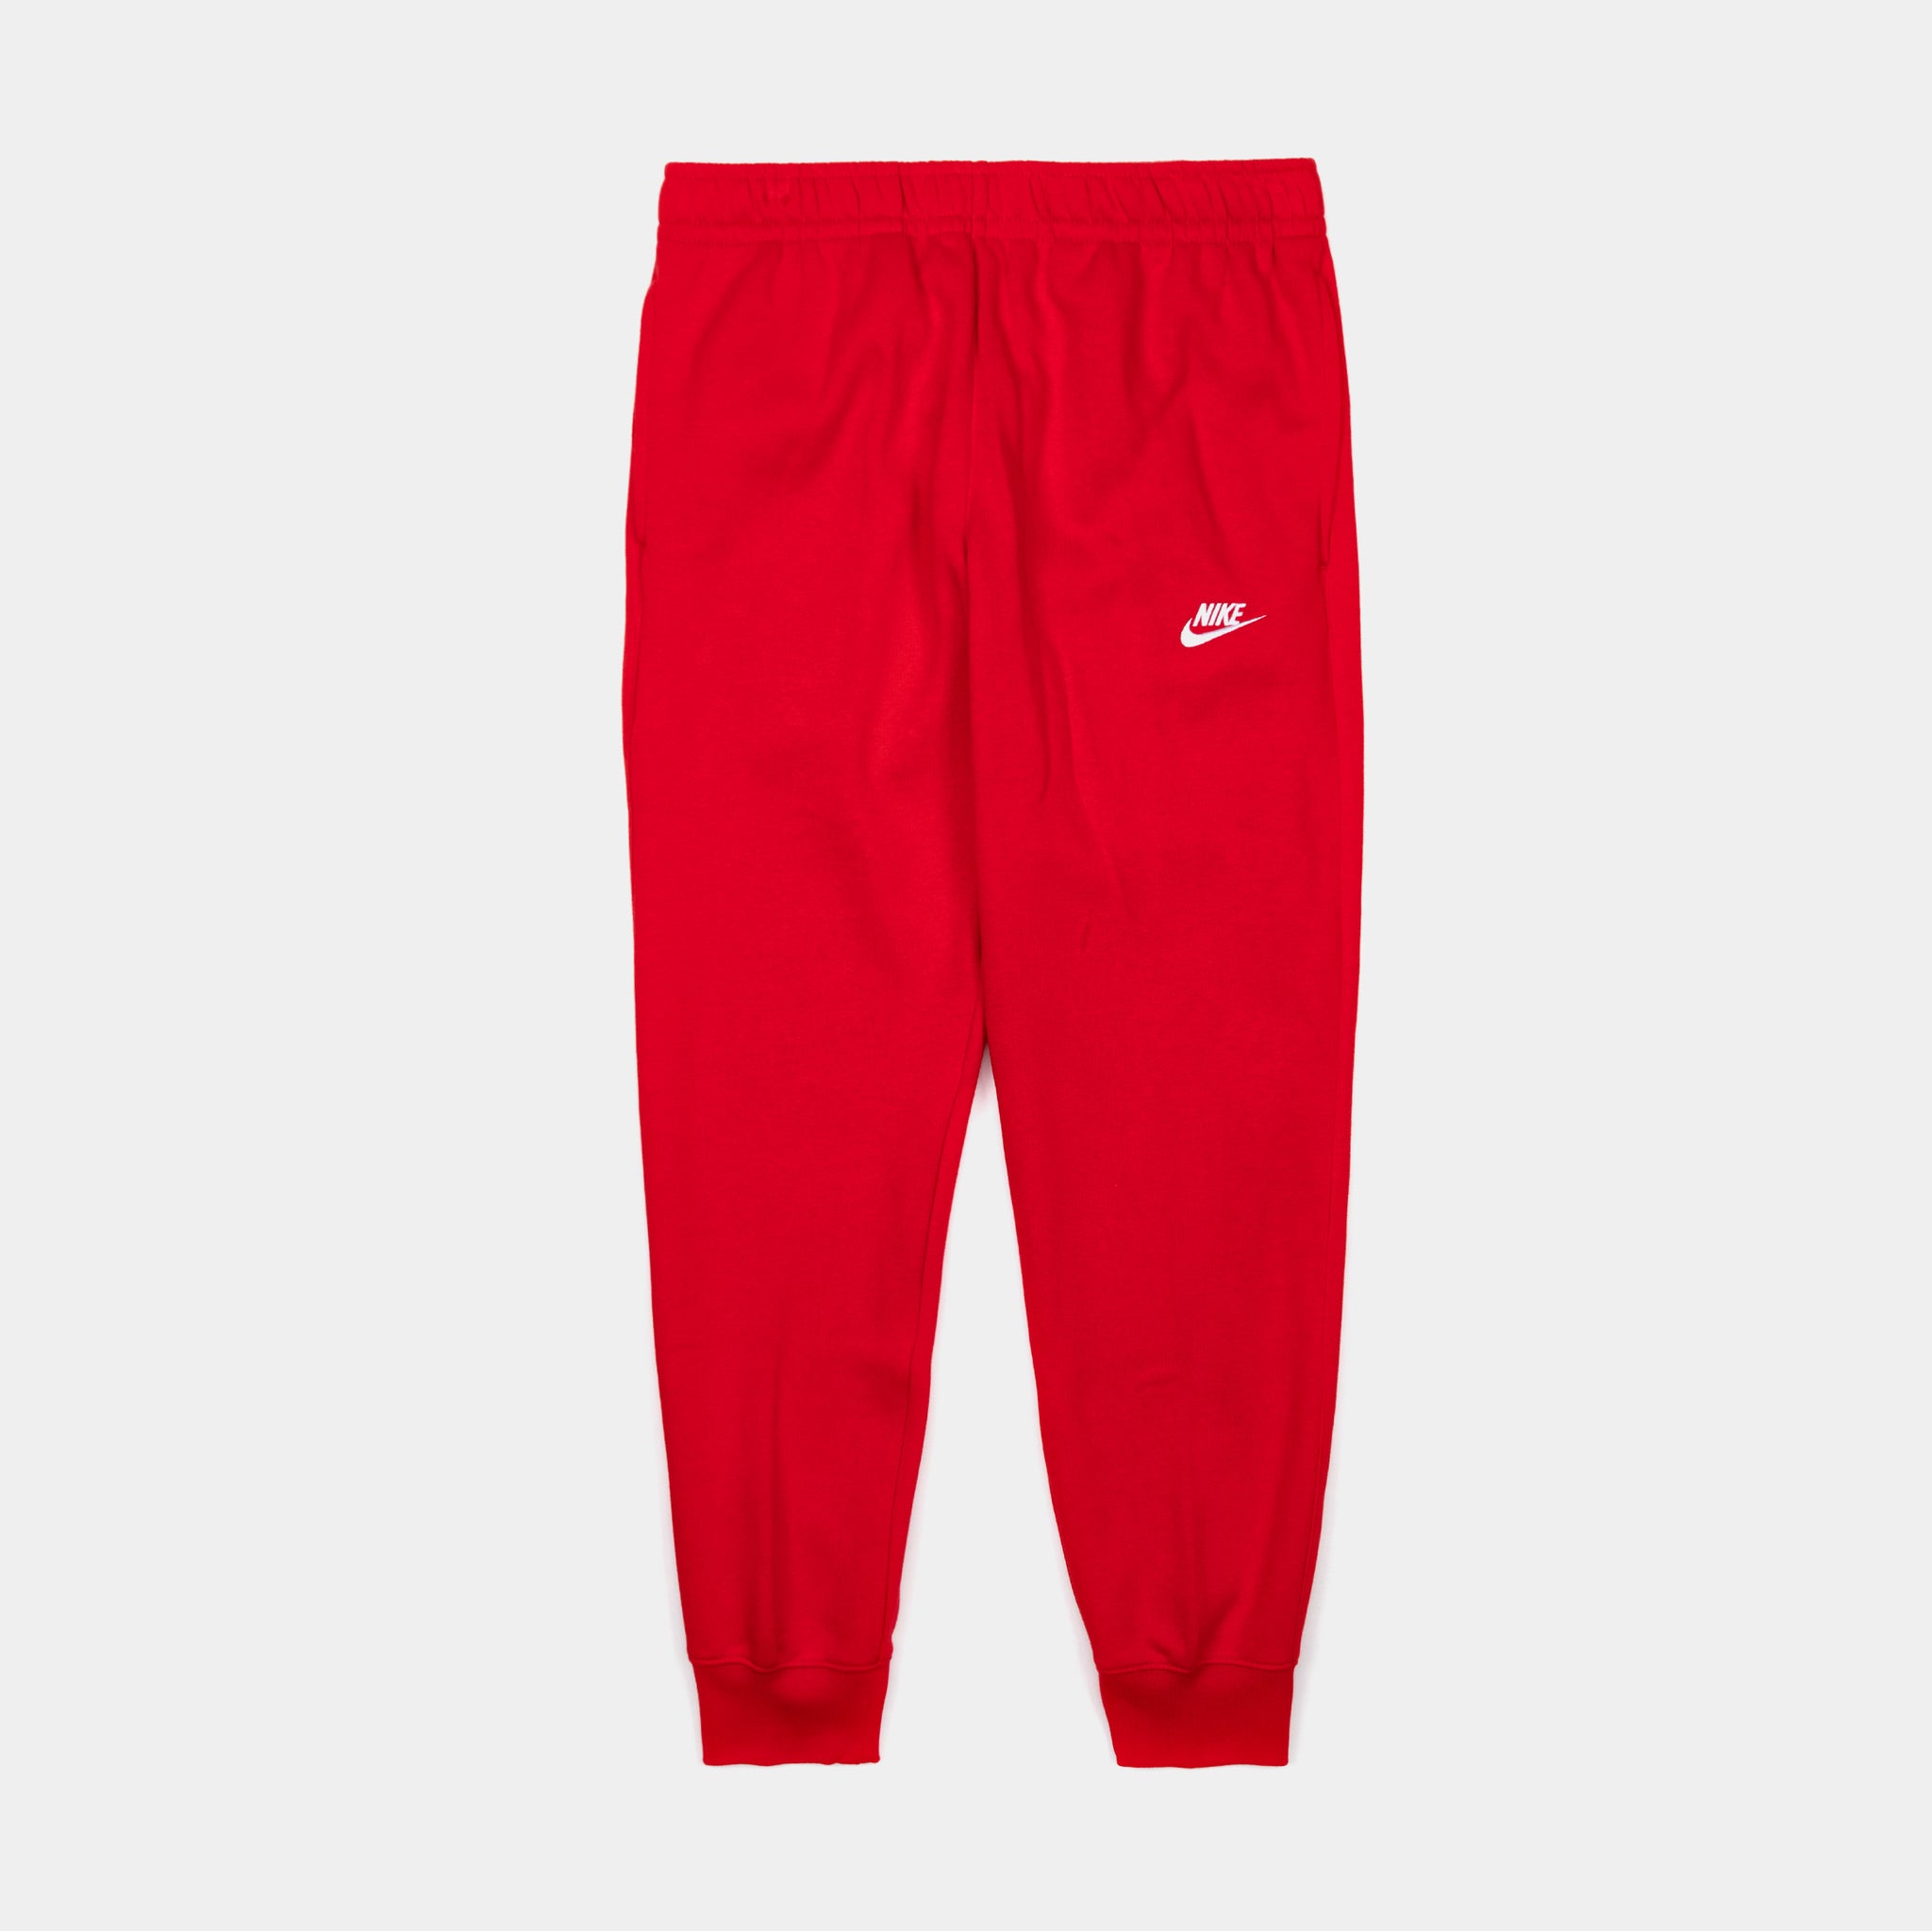 Nike Club NSW sweatpants in red